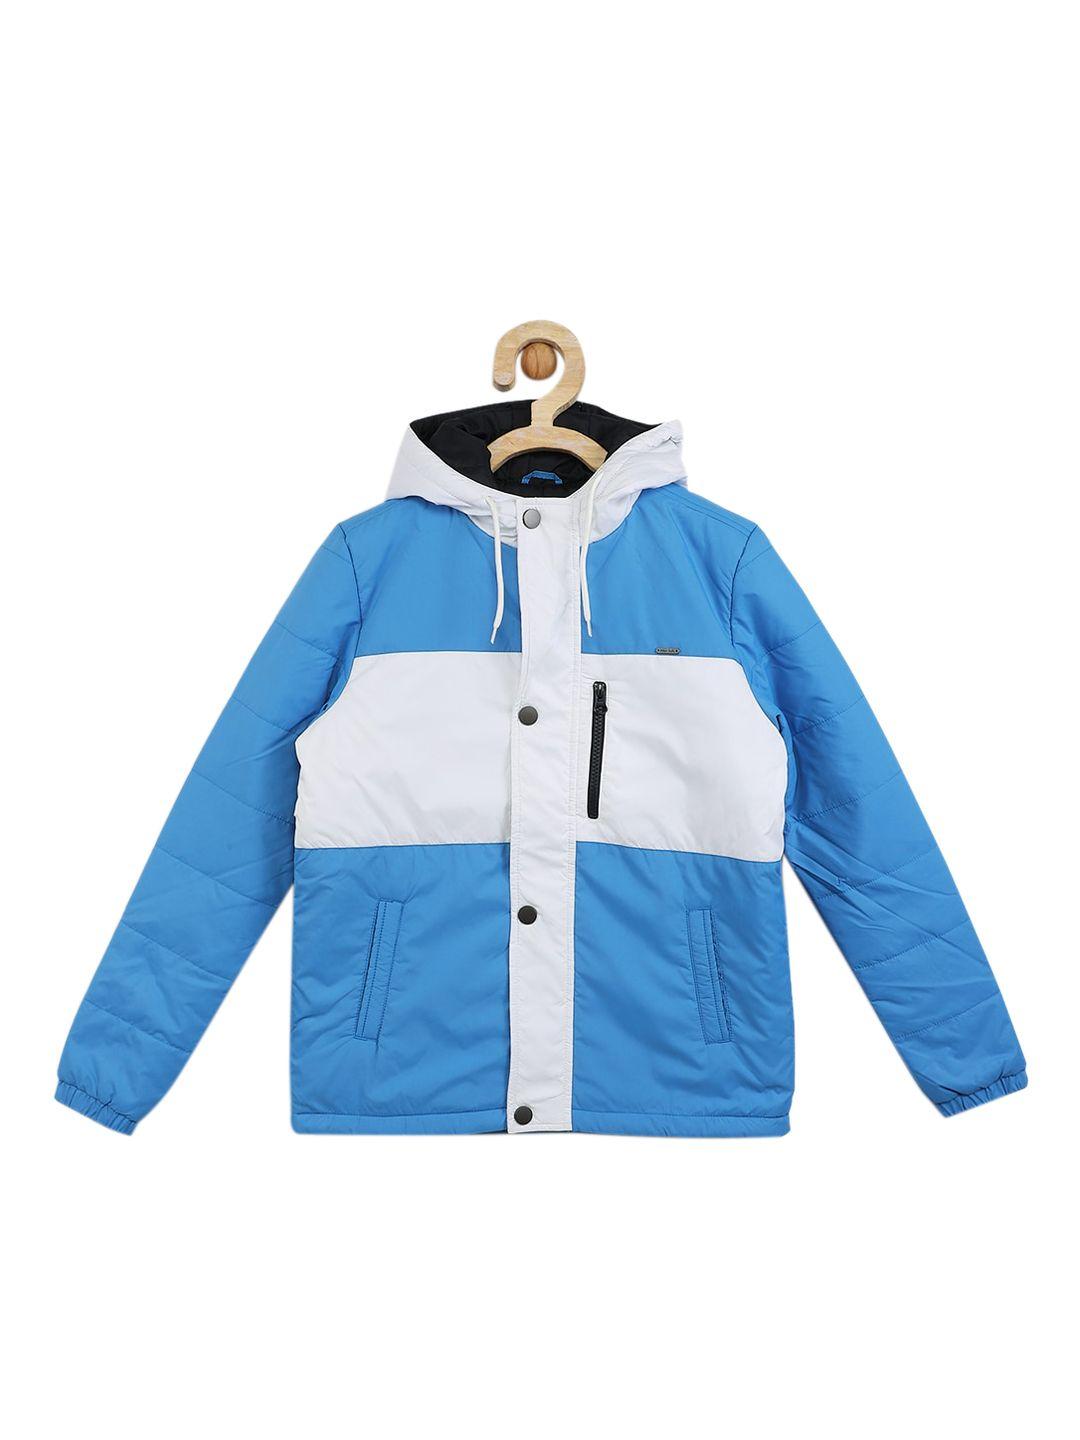 allen solly junior boys blue colourblocked hooded padded jacket